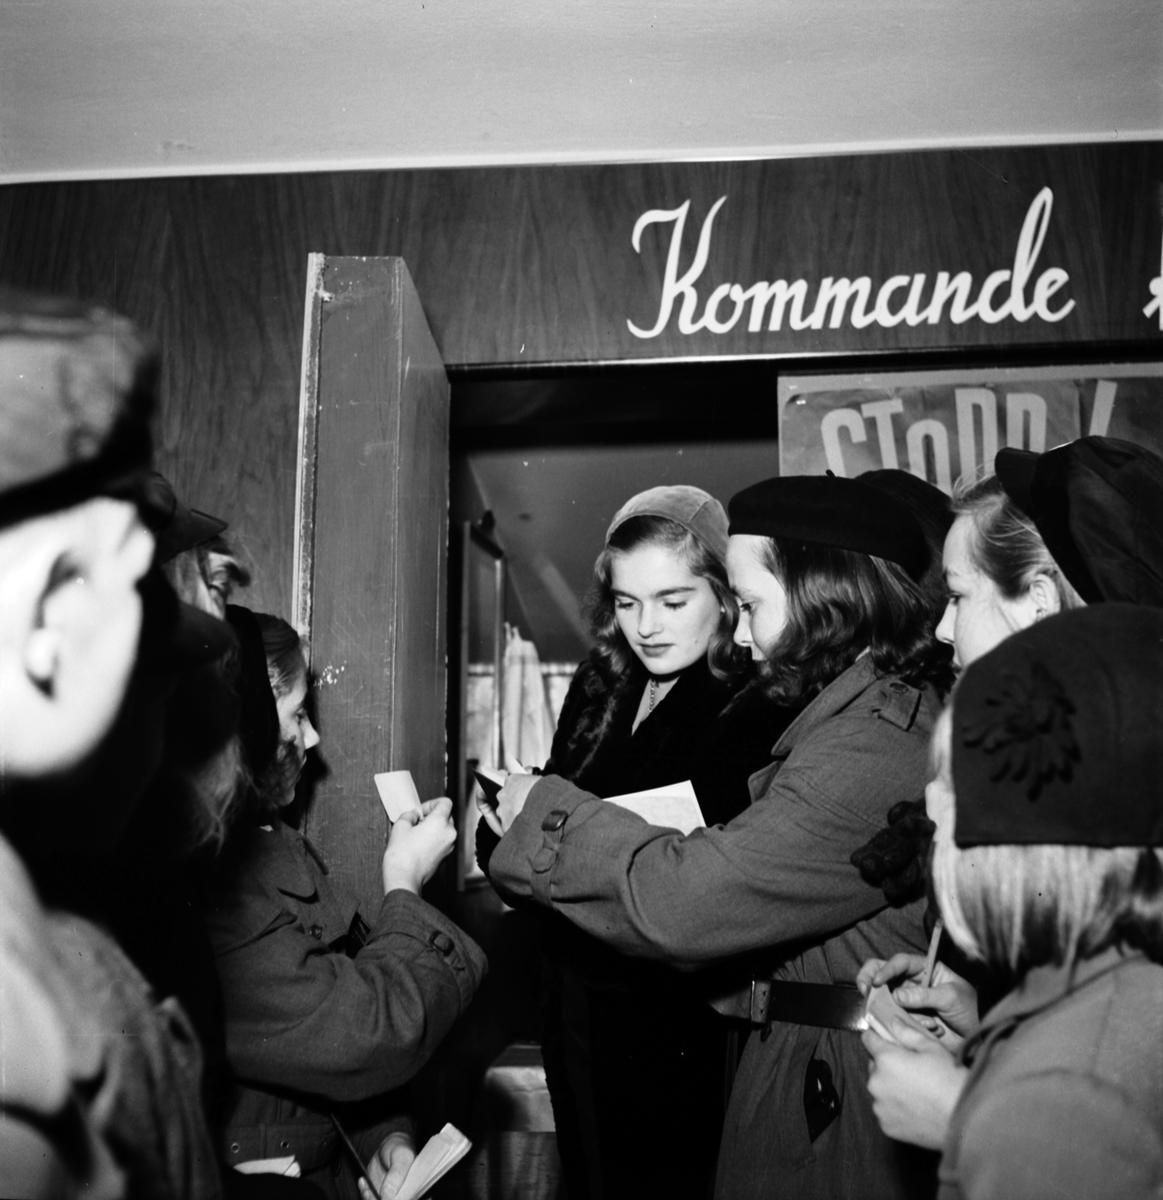 Eva Henning - Ekmans besök på Saga-biografen. November 1944

